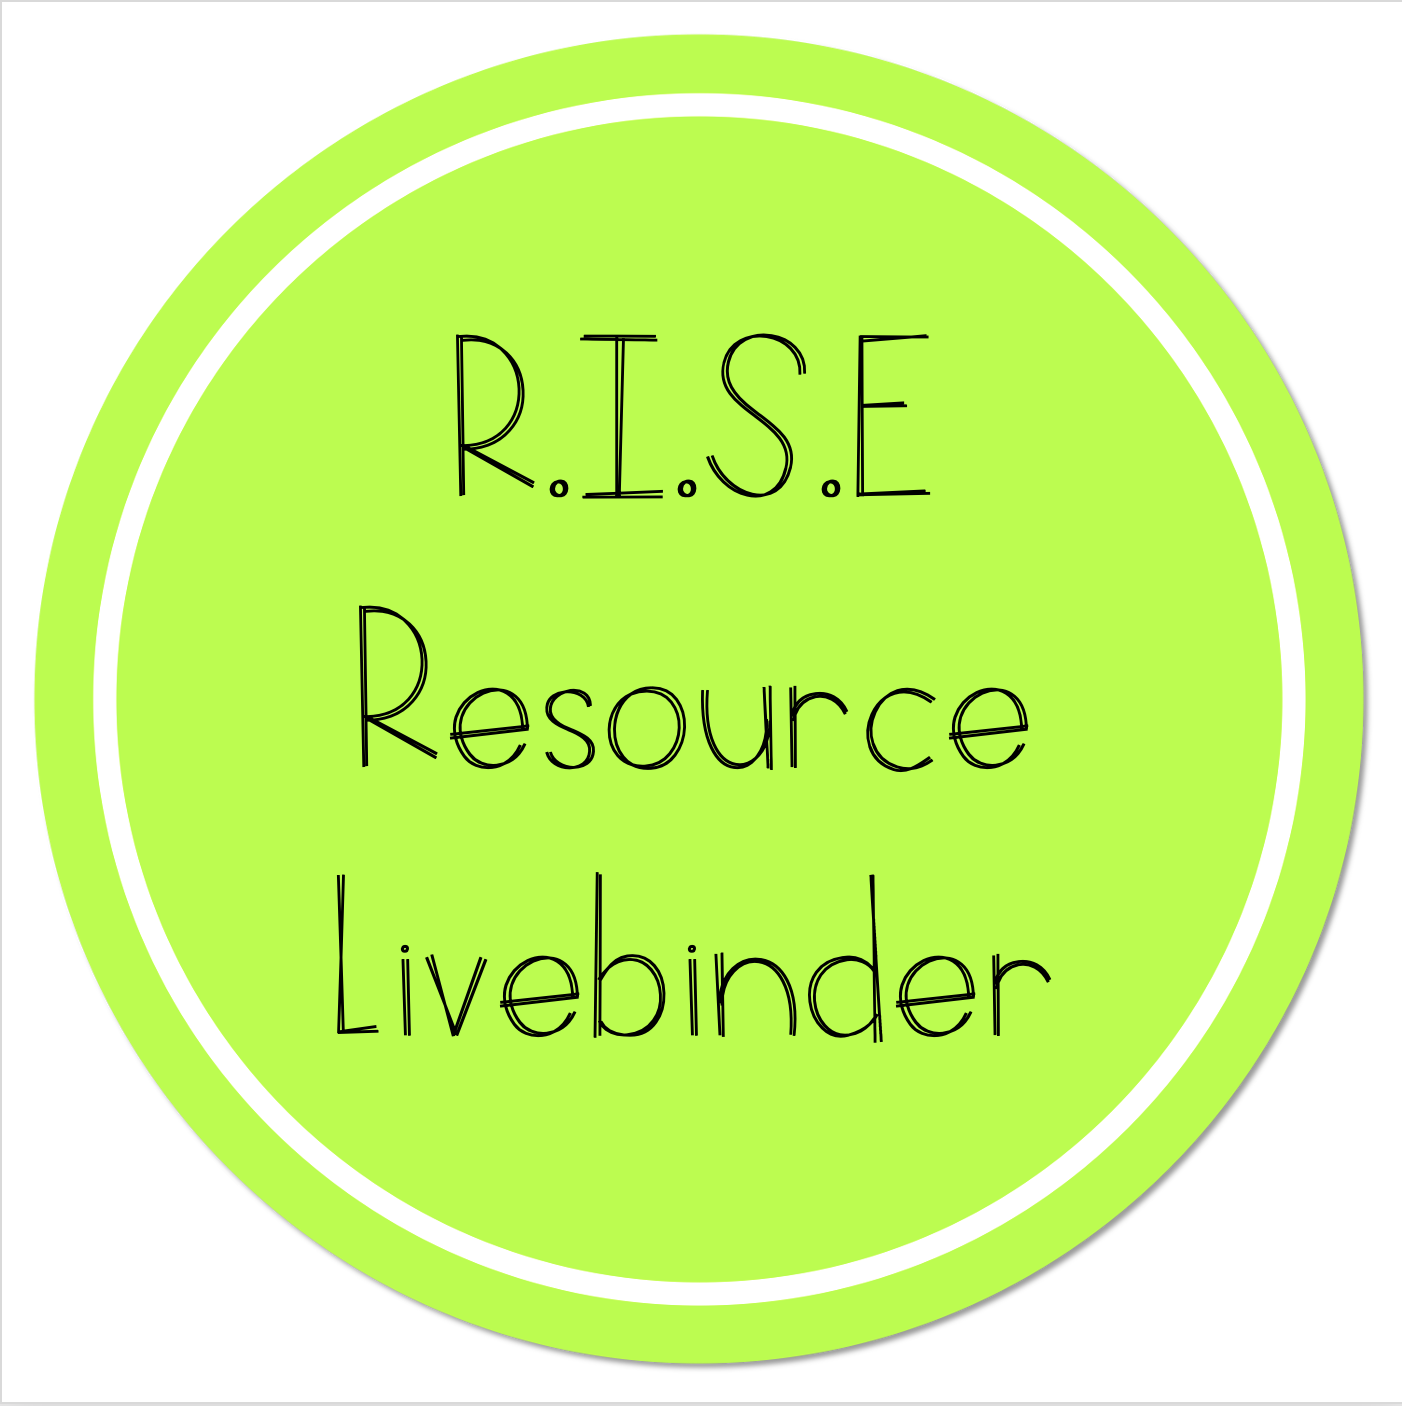 RISE Resource Livebinder